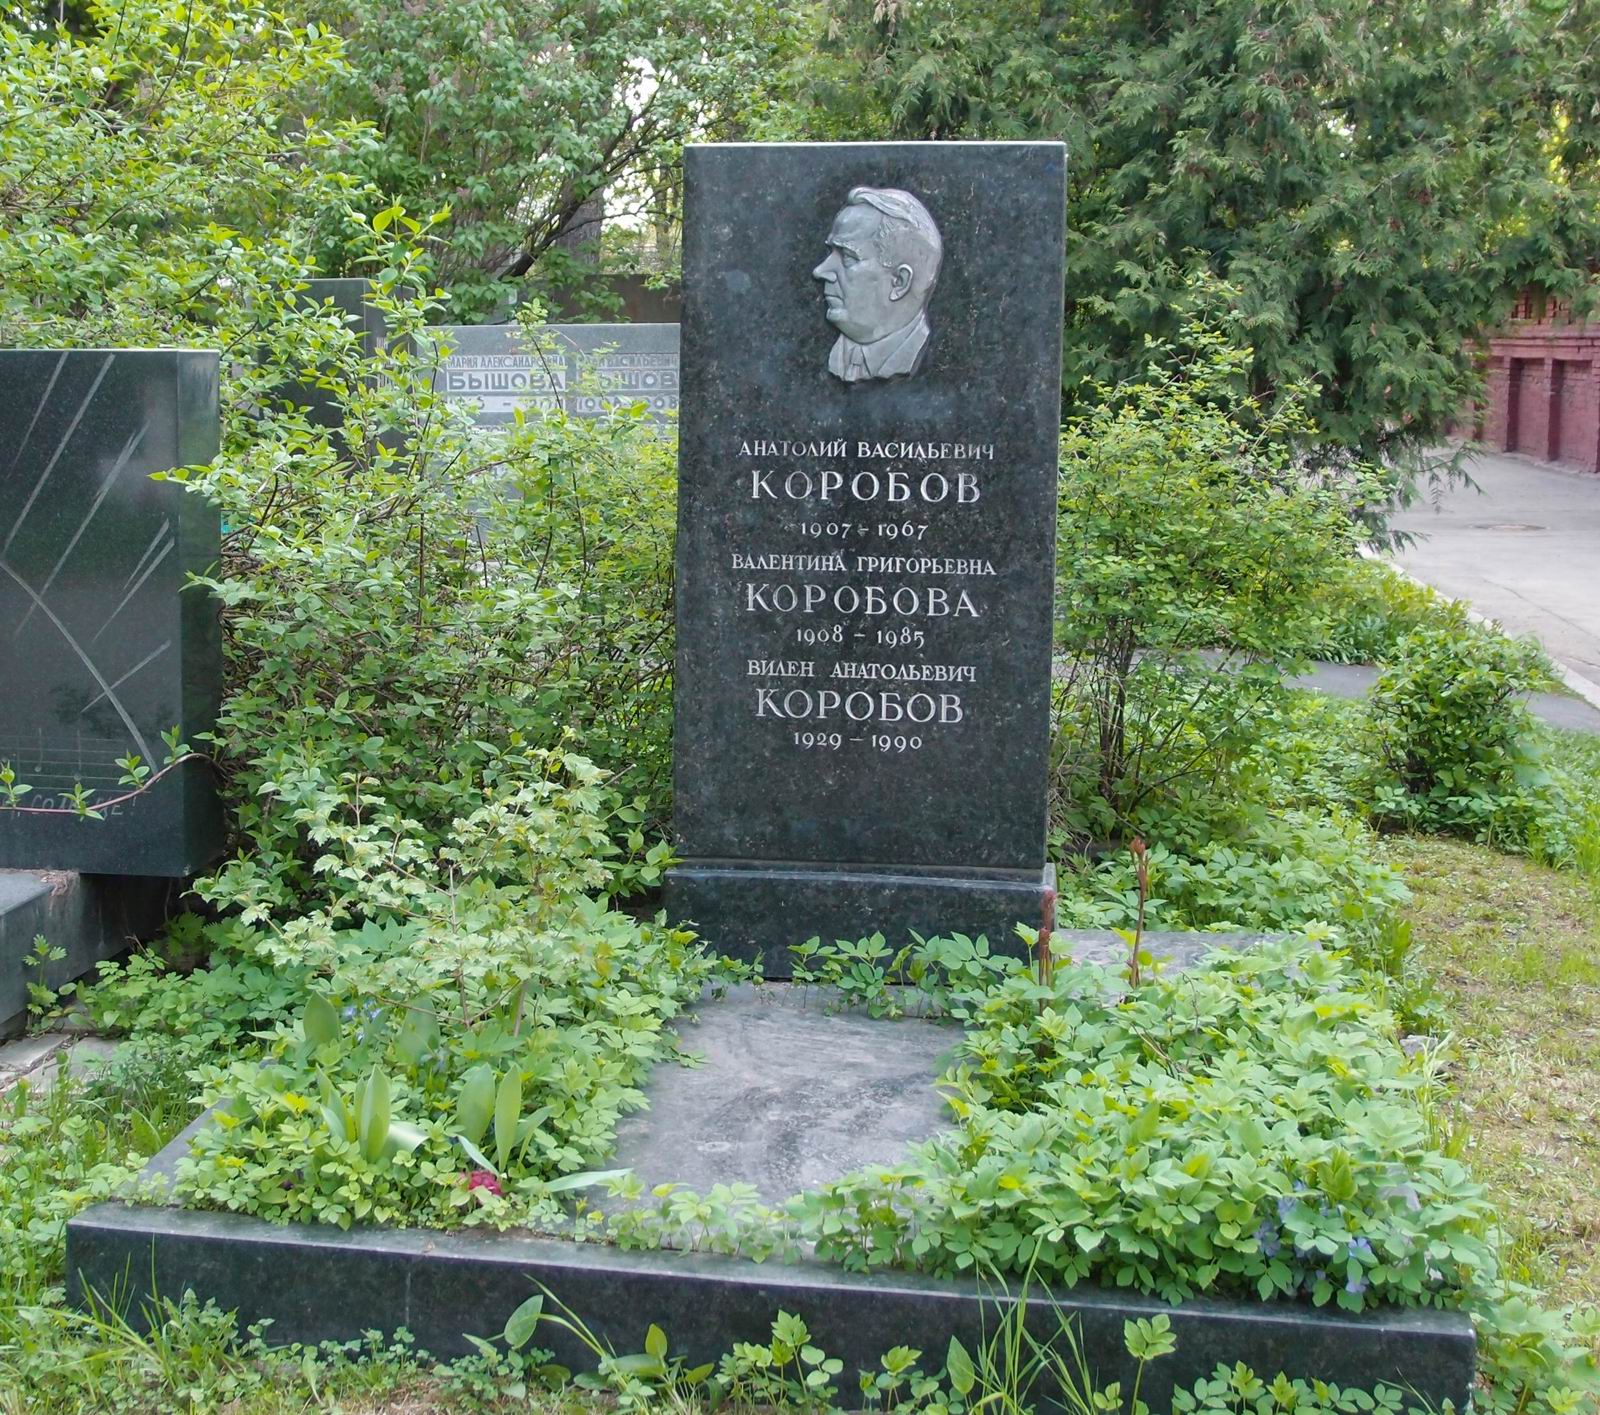 Памятник на могиле Коробова А.В. (1907-1967), на Новодевичьем кладбище (7-1-1). Нажмите левую кнопку мыши чтобы увидеть фрагмент памятника.